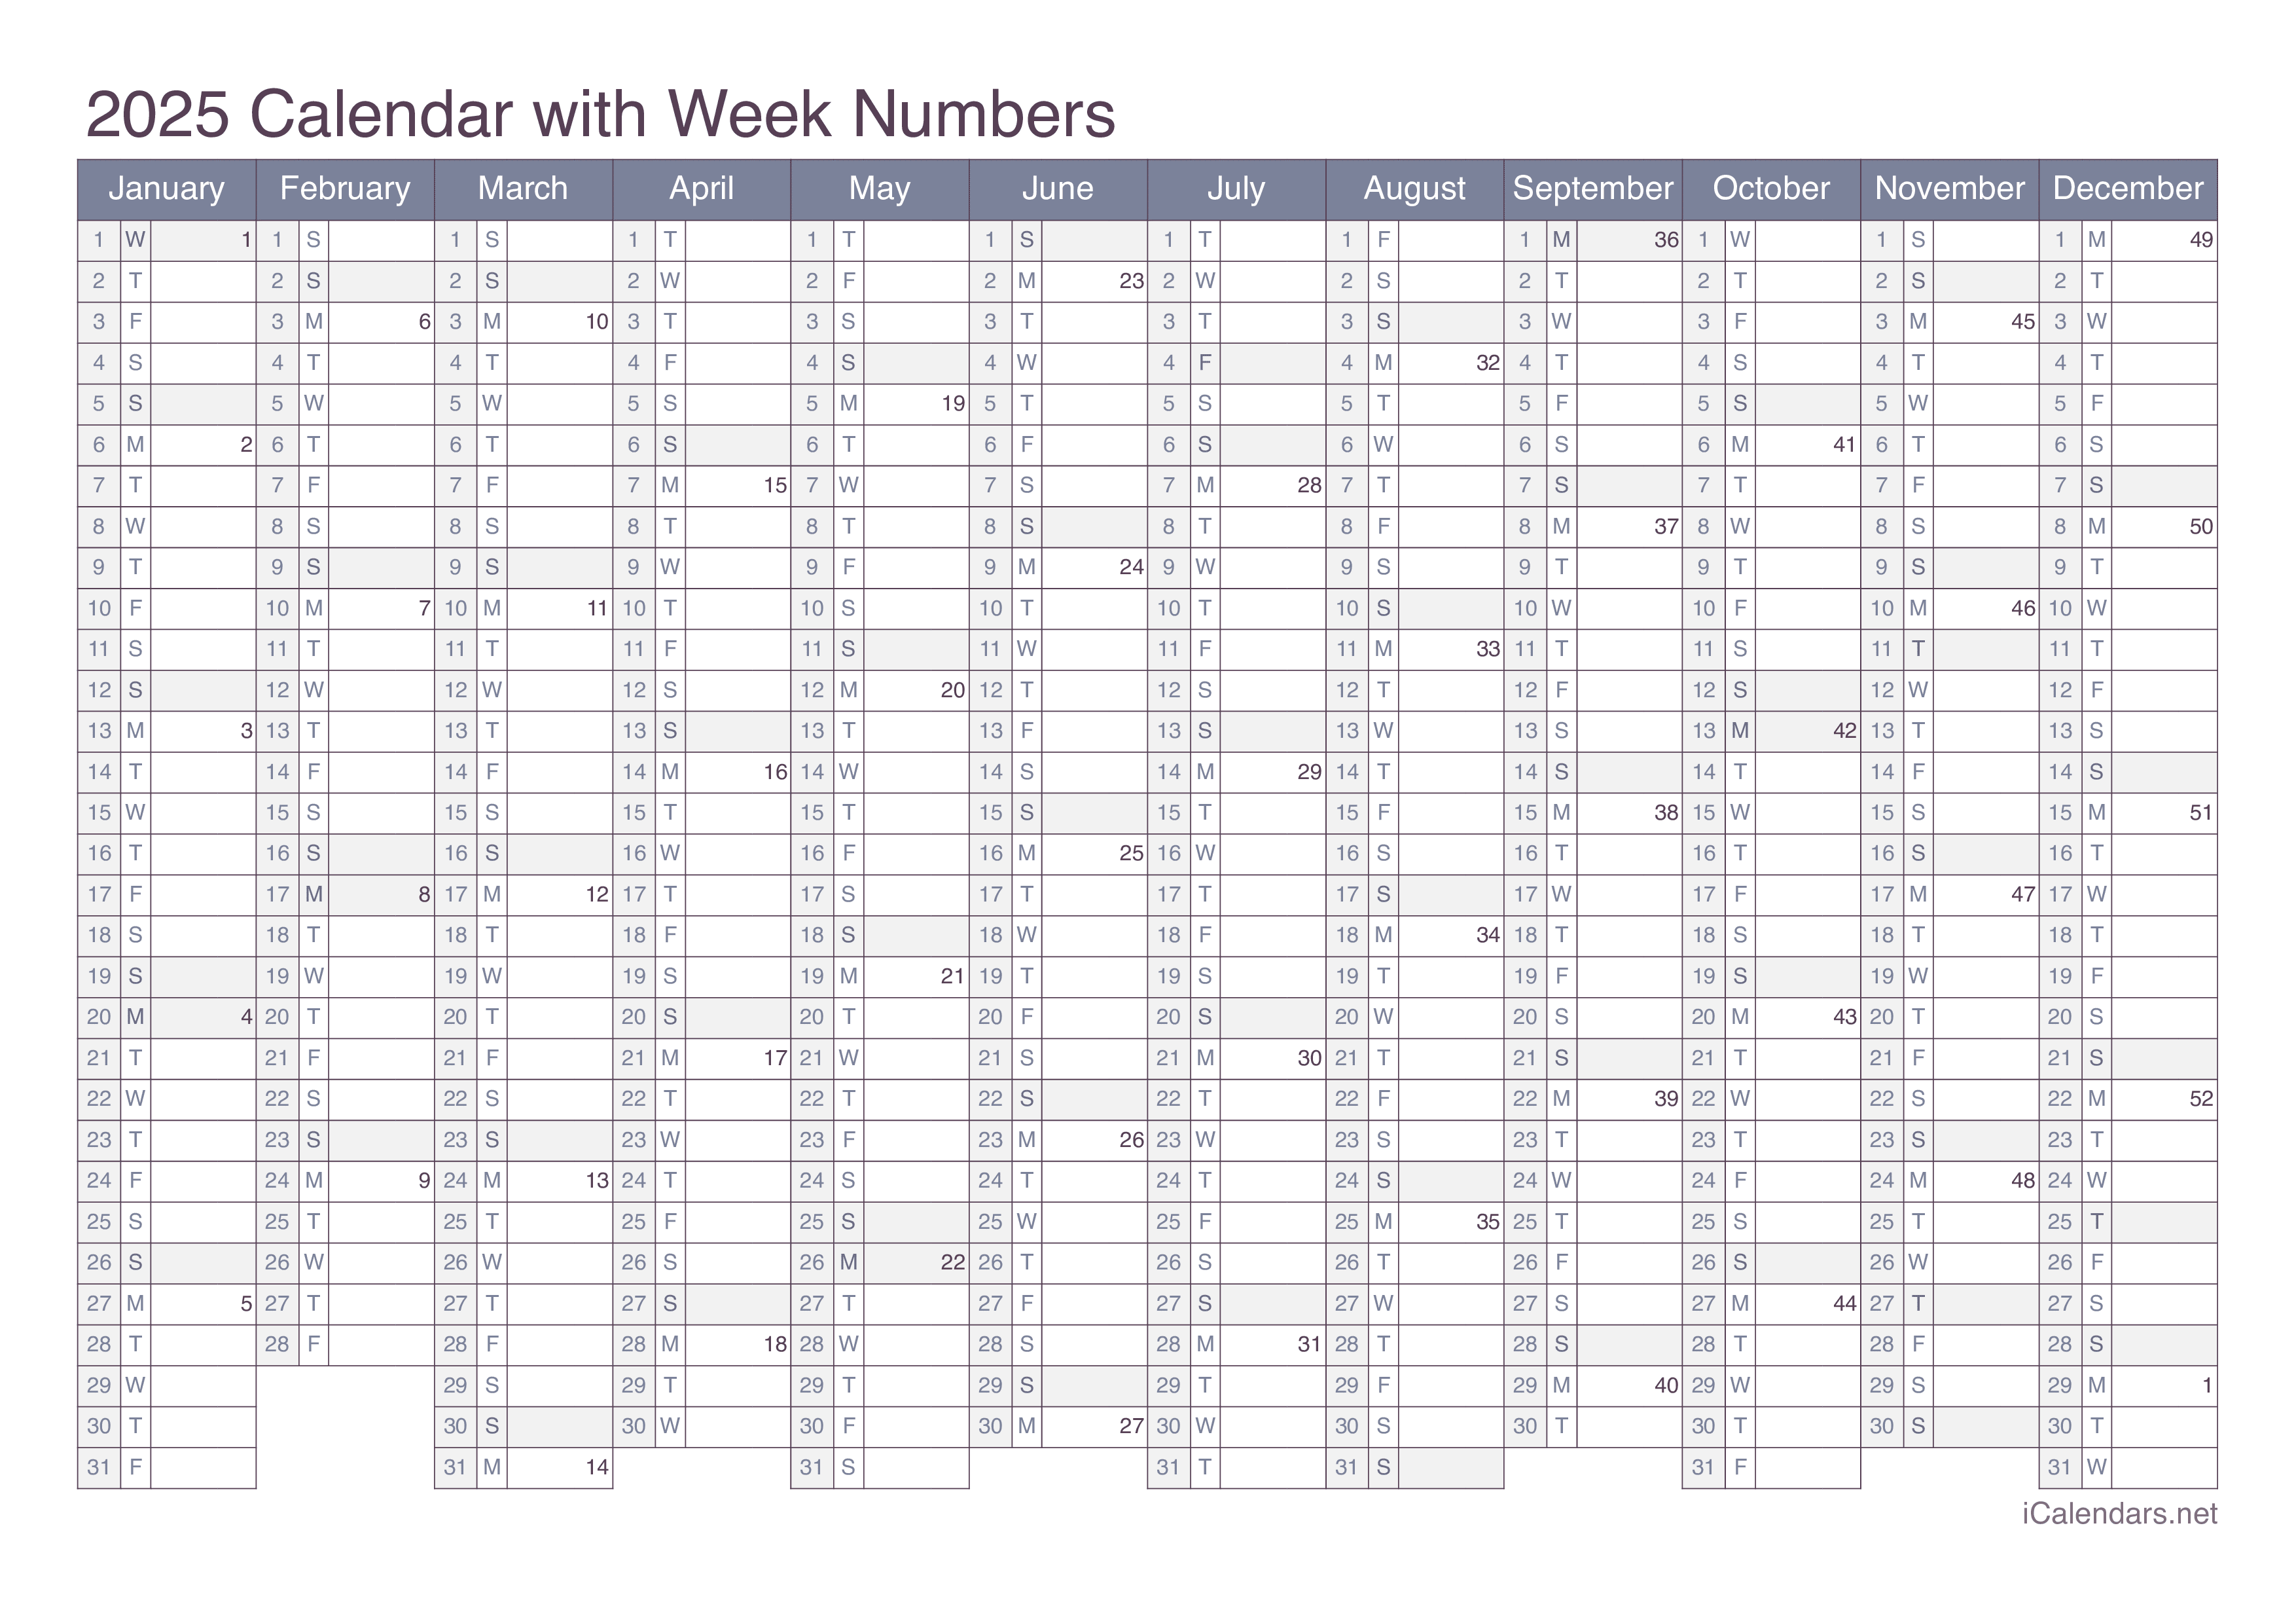 2025 Calendar with week numbers - Office